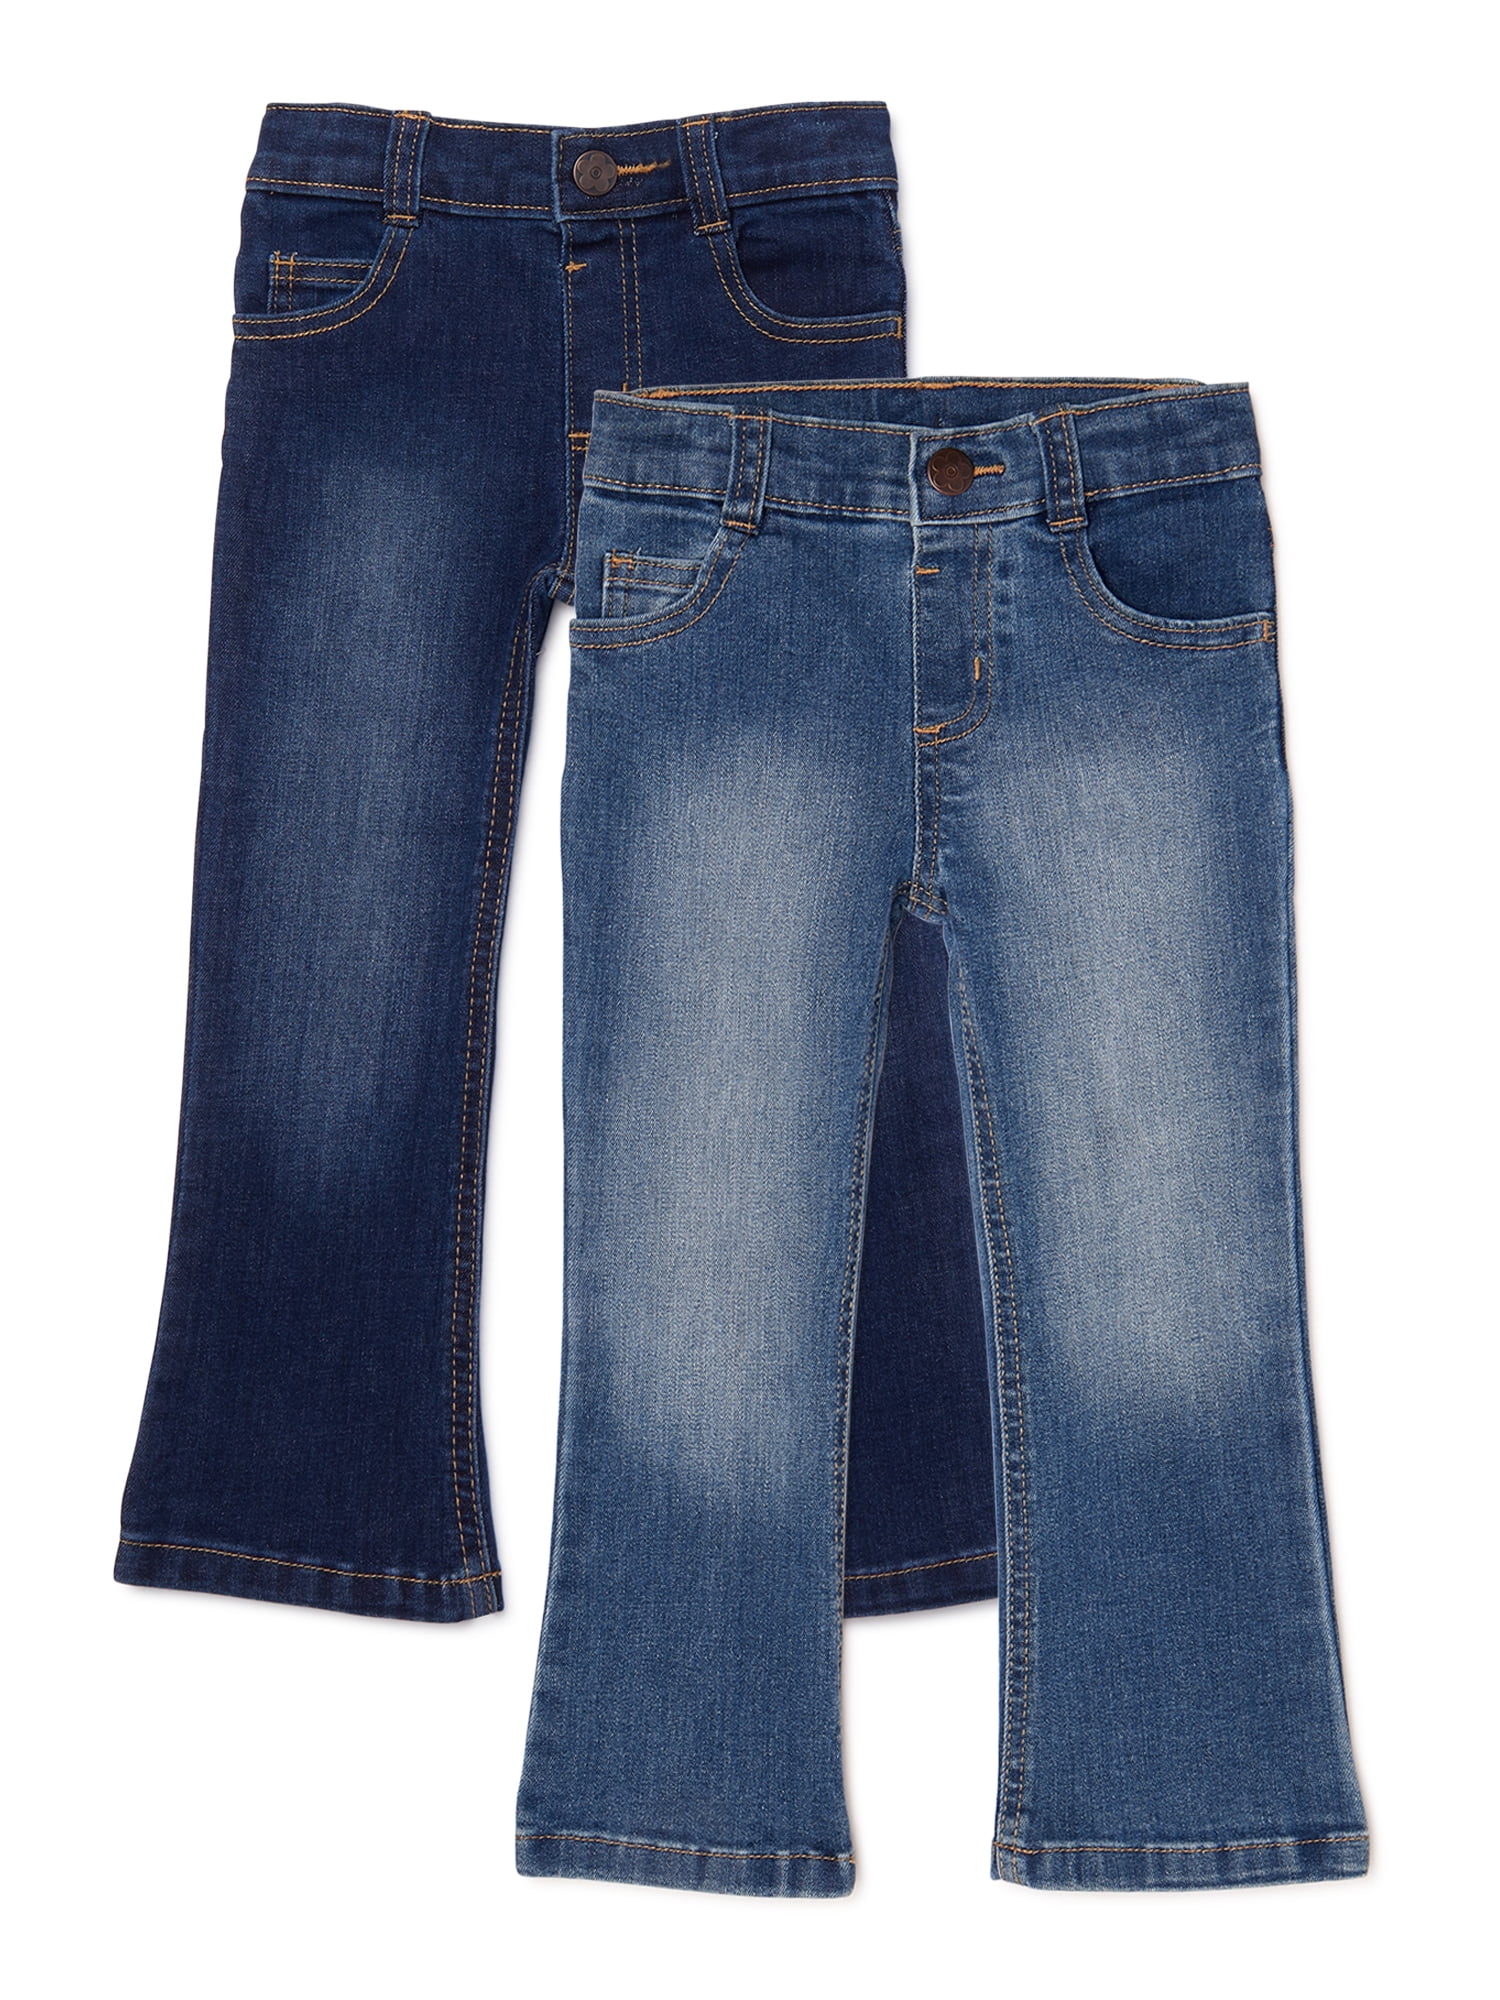 Garanimals Baby Girls & Toddler Girls Boot Cut Jeans, 2-Pack (12M-5T) -  Walmart.com